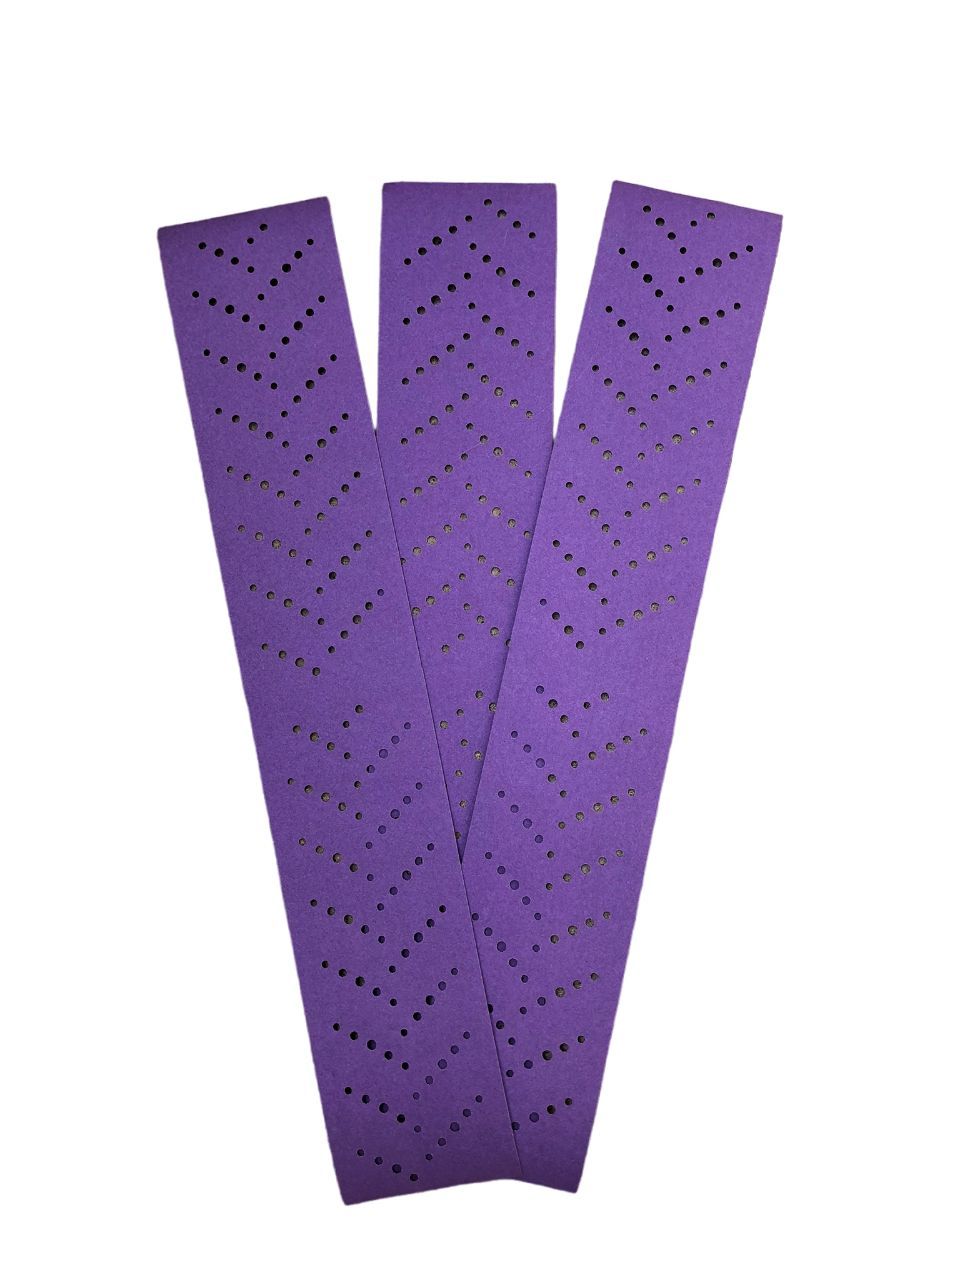 Абразивные полоски. 3m 50533 Hookit Purple+ 734u абразивный с мультипылеотводом 150мм p400 (5шт). Полоска абразивная Purple+ 3m 70*396 p80. Кубитрон полоски шлифовальные. 3m полоски абразивные.